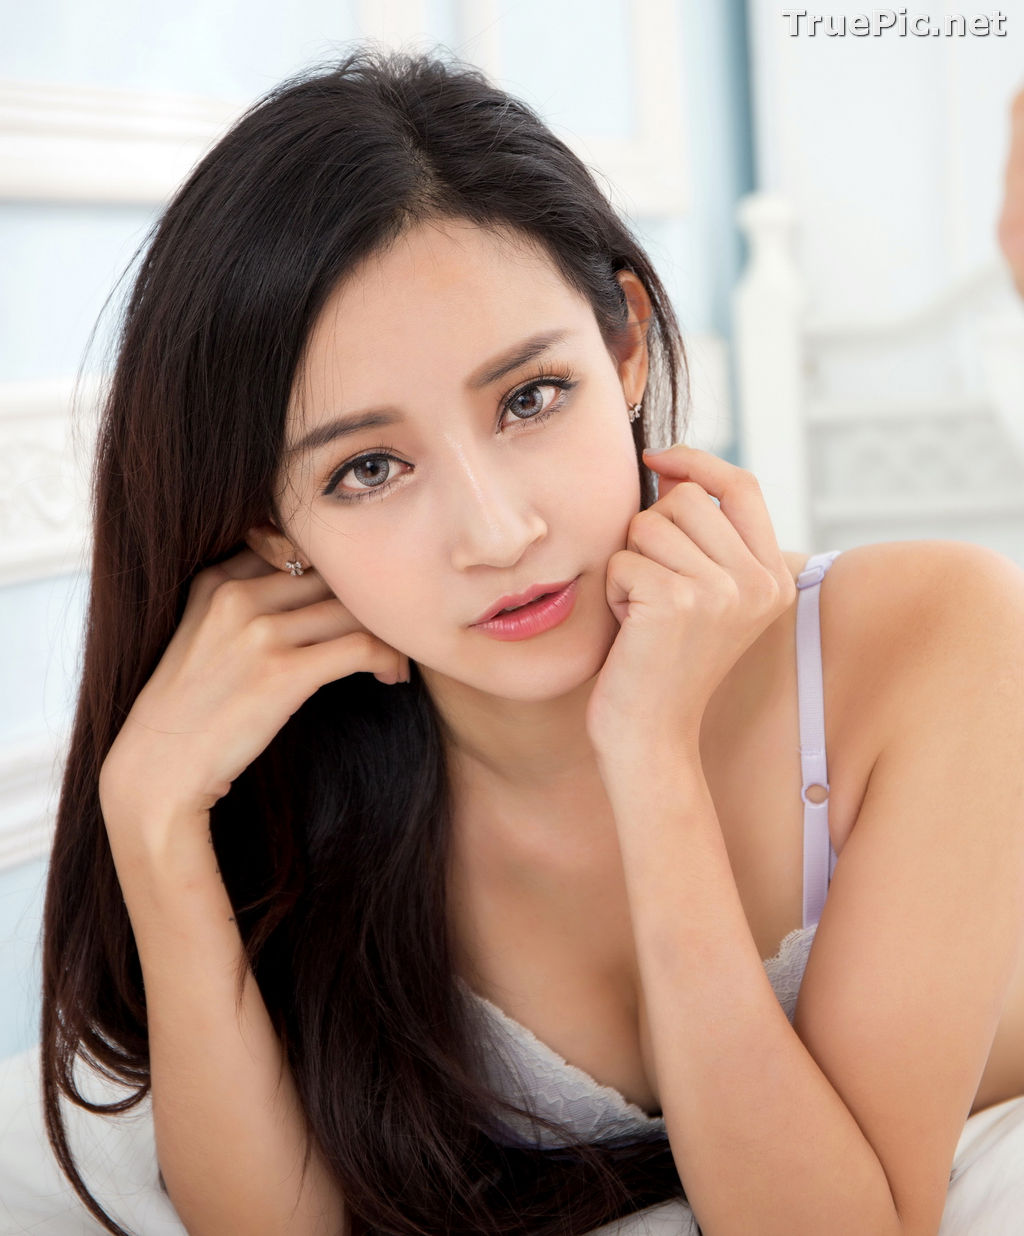 Image Taiwanese Model - Avril Zhan (詹艾葳) - Beautyleg Girl and Bikini Show - TruePic.net - Picture-31